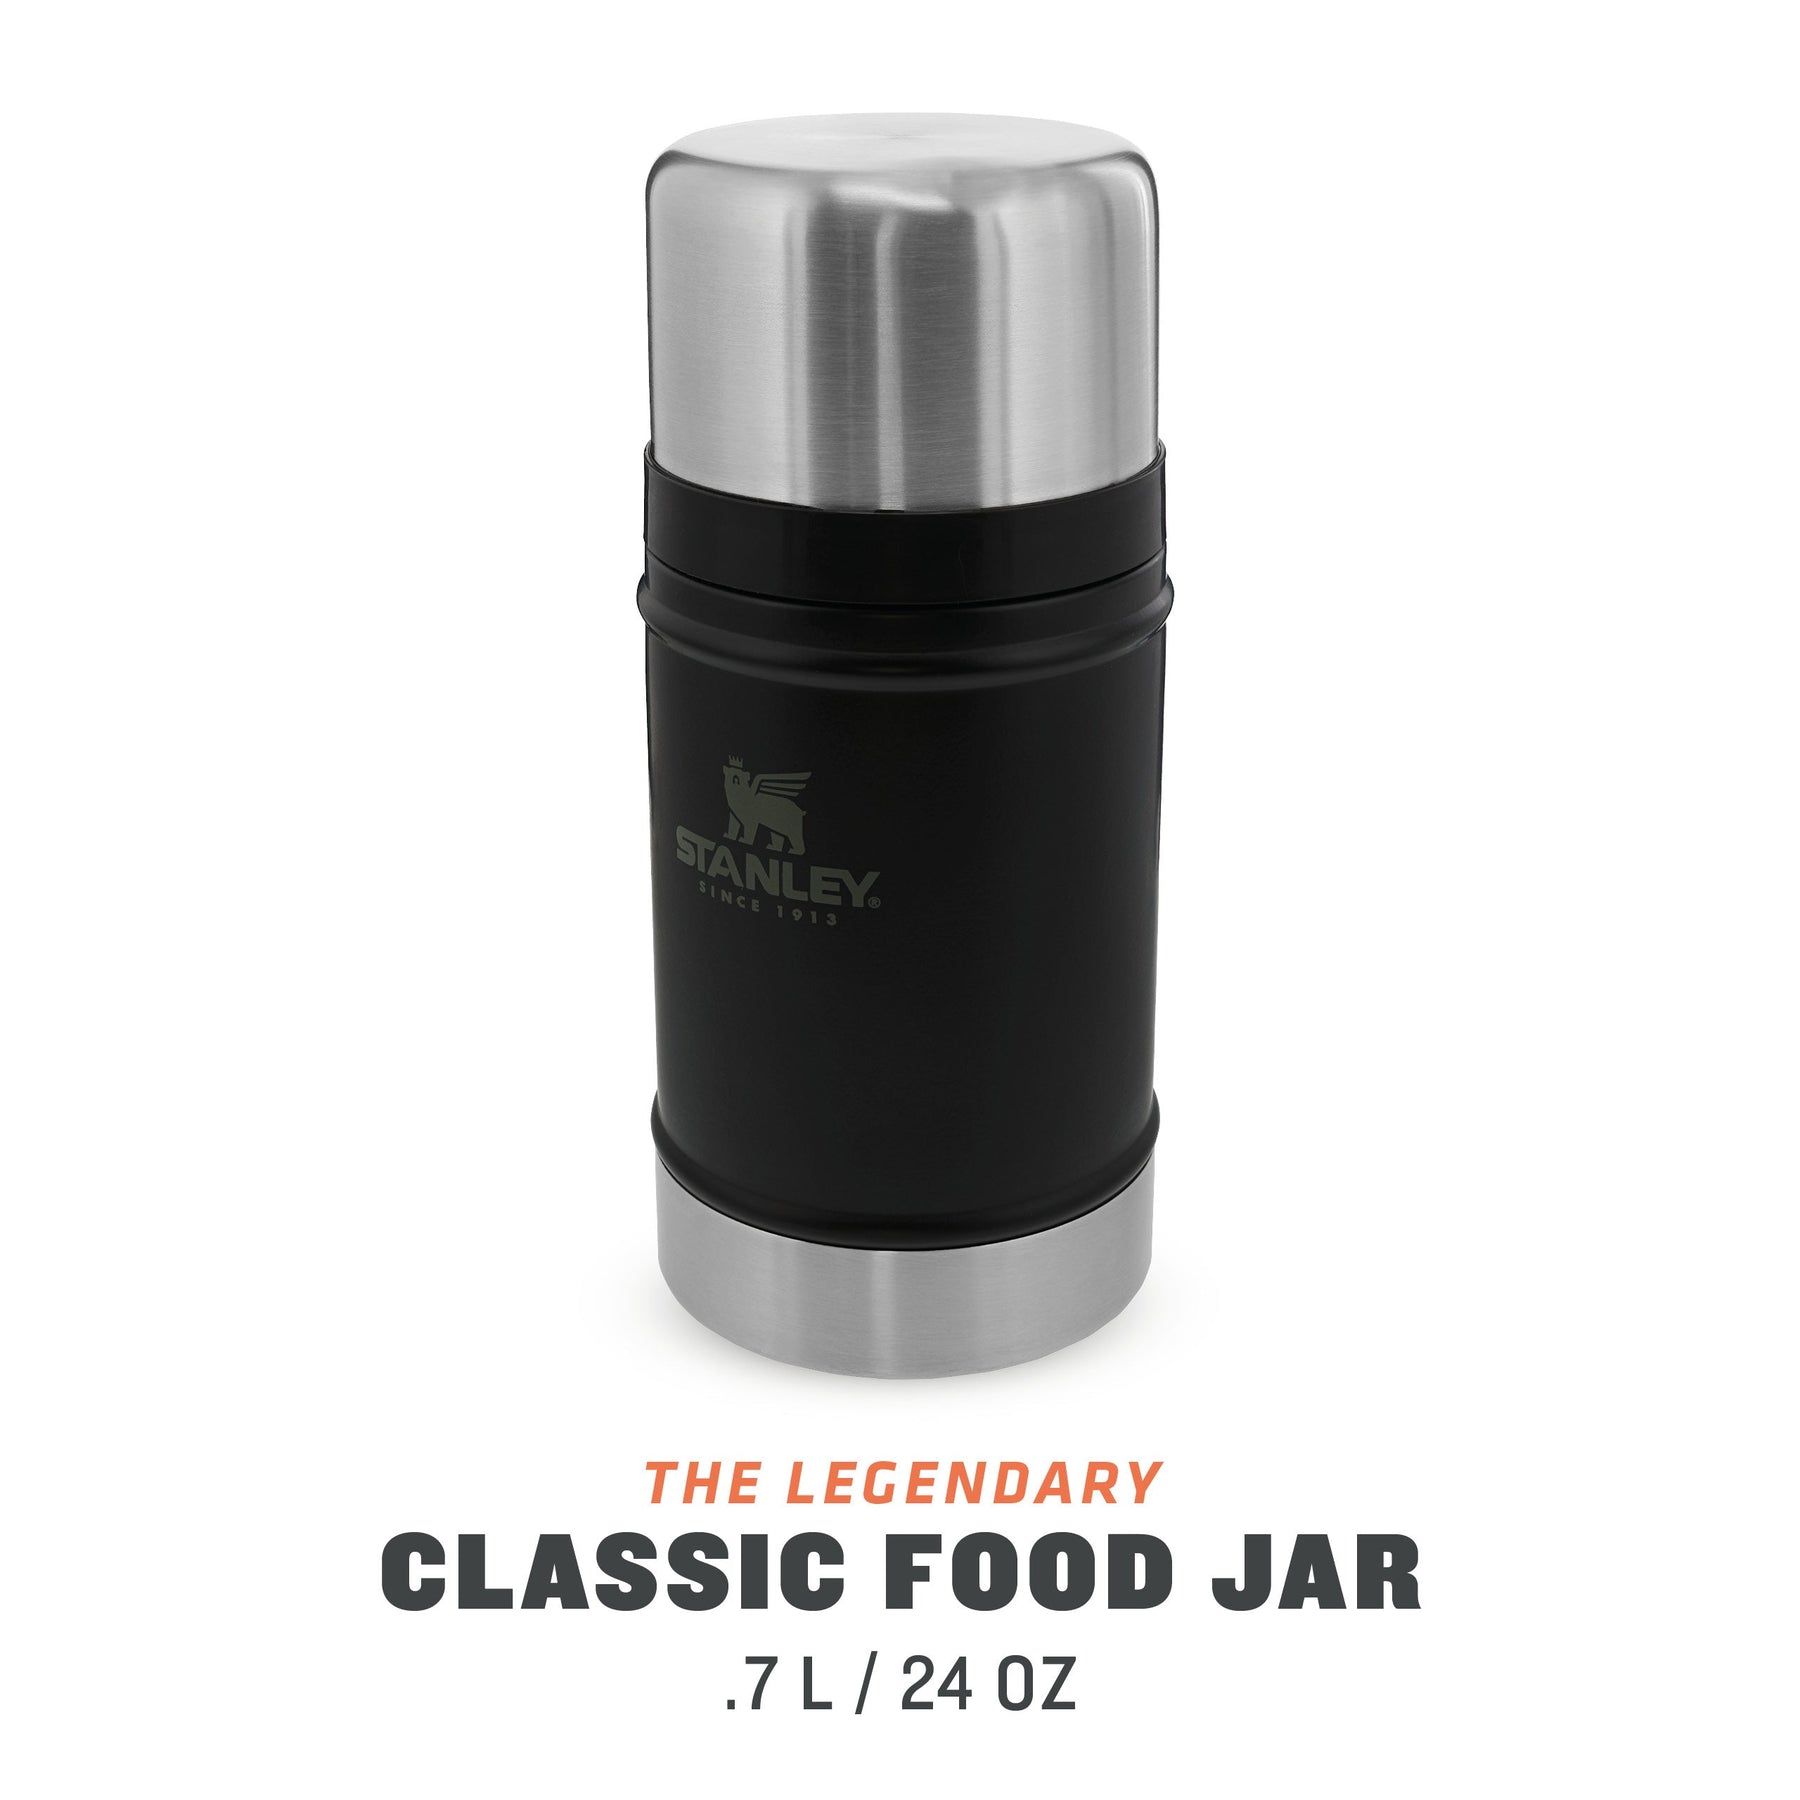 Classic Legendary Food Jar + Spork, 0.4 L